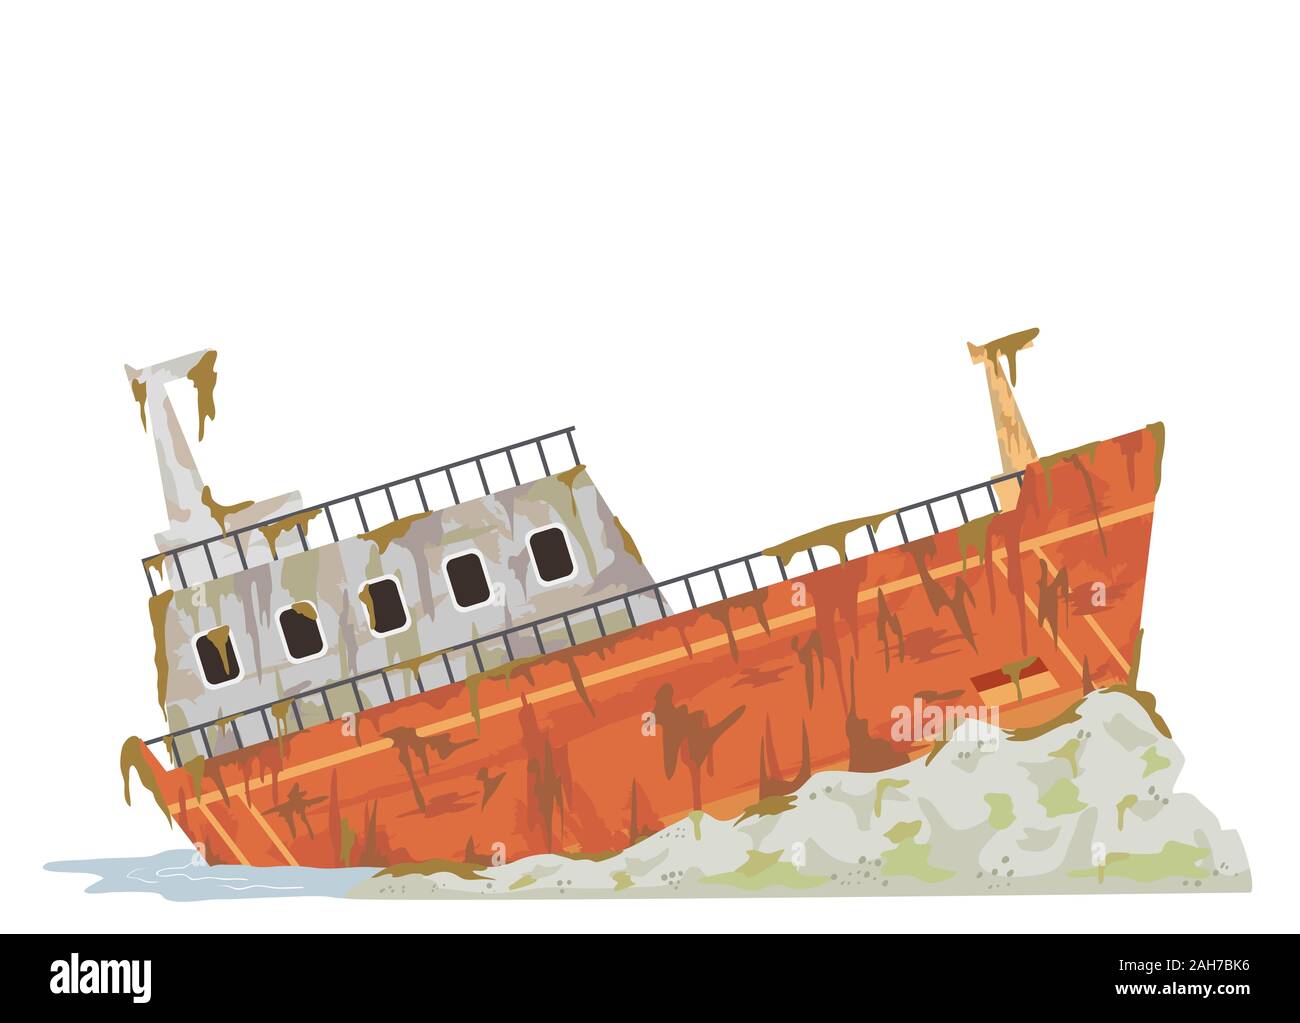 Illustrazione di un arrugginimento abbandonato nave cargo in riva al mare Foto Stock